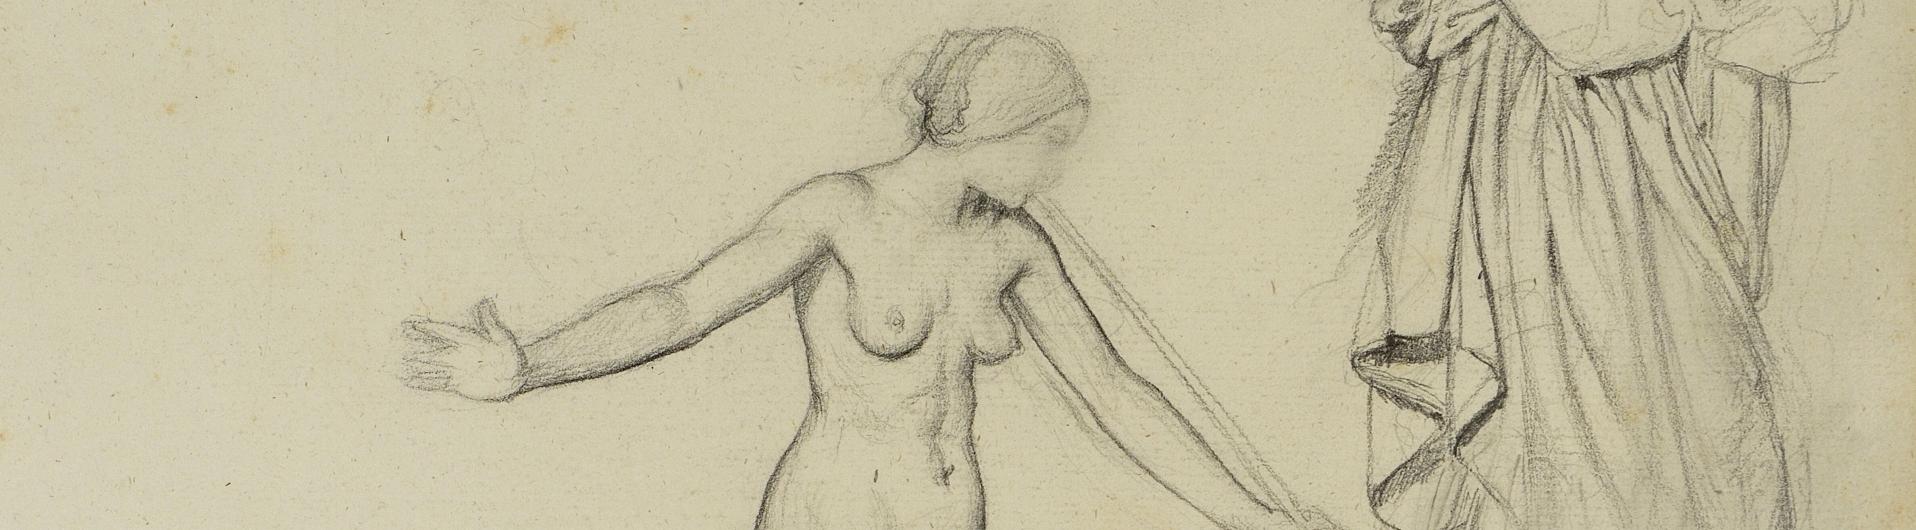 EDGAR DEGAS (1834-1917) Étude de jeune femme nue jouant de la trompe et deux études du corps drapé, pour Saint Jean-Baptiste et l’ange, vers 1857 crayon graphite sur papier, 26,5 x 38 cm